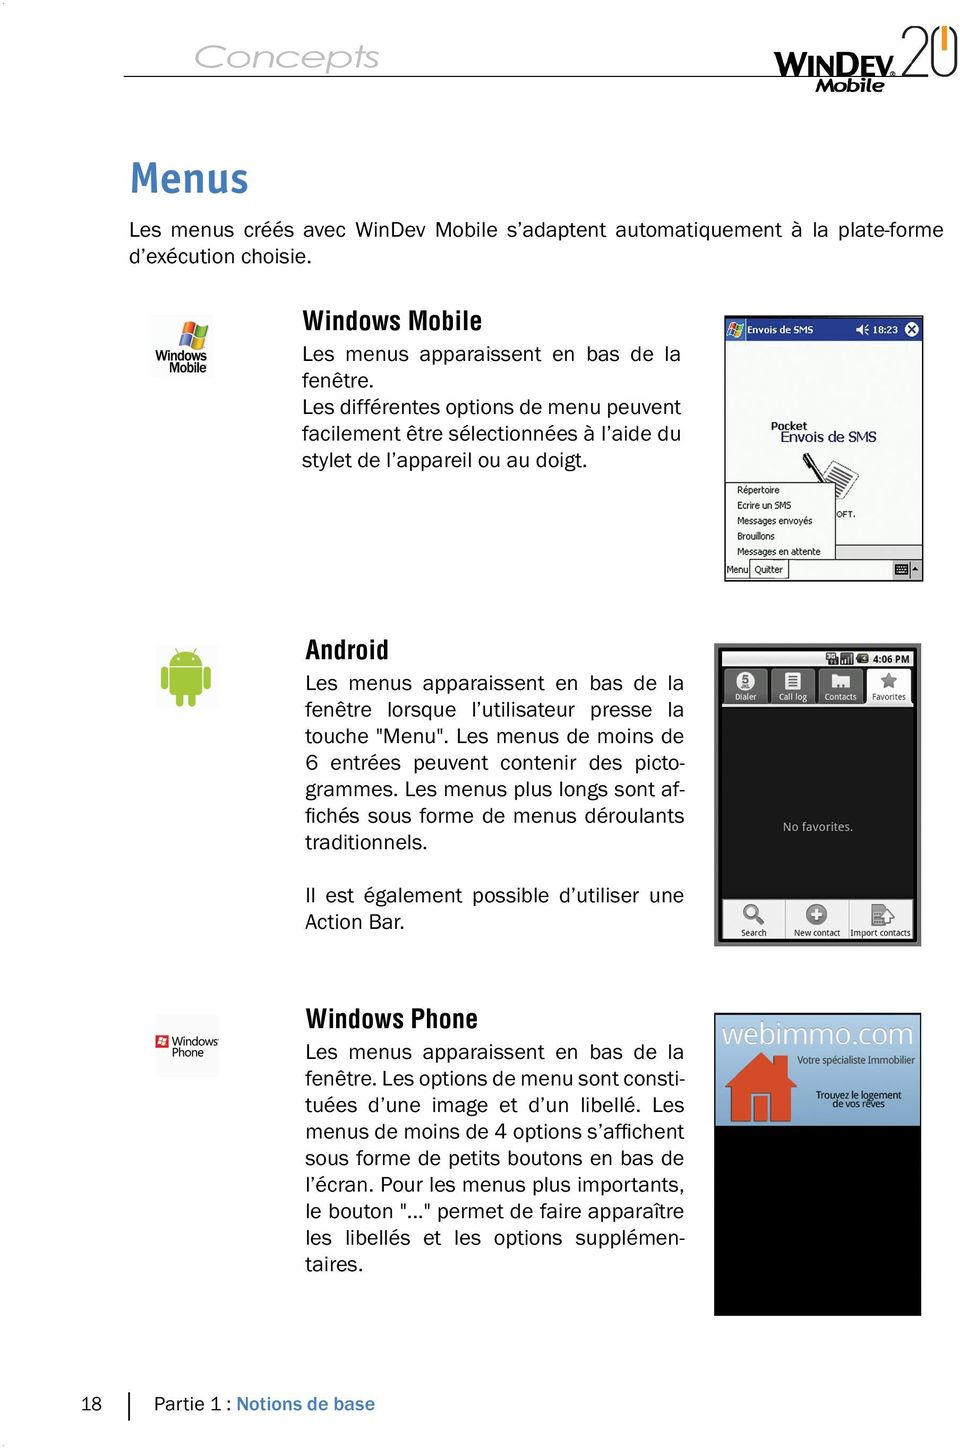 Android Les menus apparaissent en bas de la fenêtre lorsque l utilisateur presse la touche "Menu". Les menus de moins de 6 entrées peuvent contenir des pictogrammes.